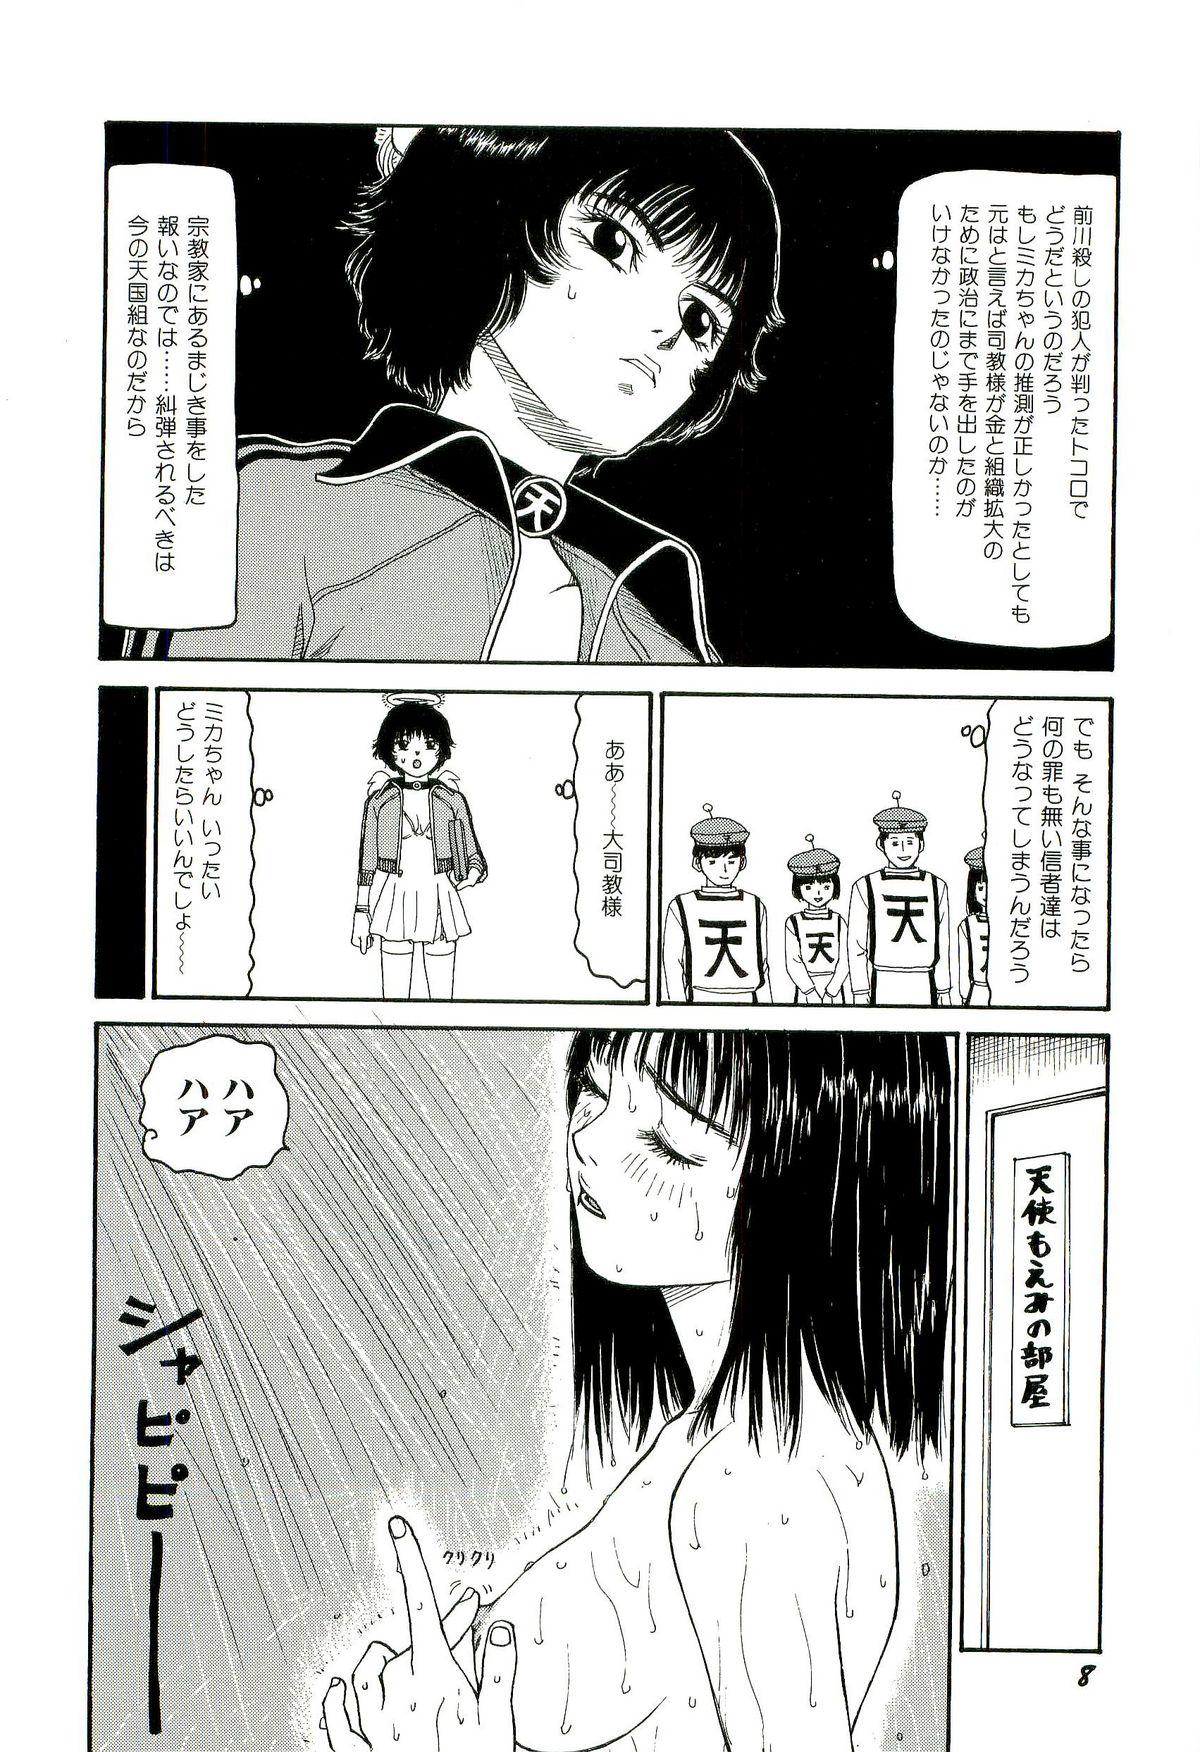 Putita Jigokugumi no Onna 3 Fantasy Massage - Page 9